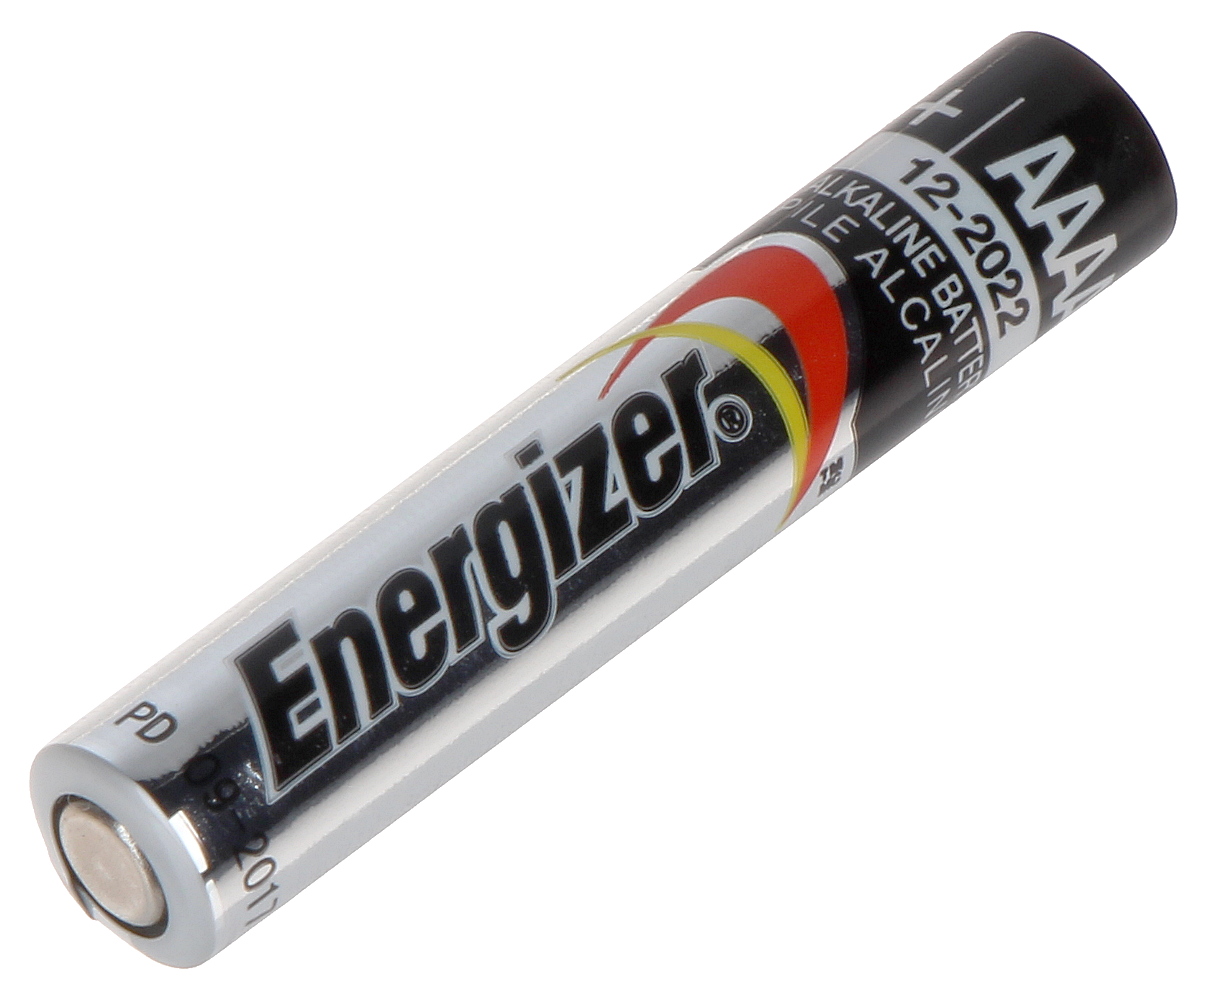 ALKALINE BATTERI BAT-AAAA*P2 1.5 V (AAAA) ENERGIZER - Alkaliske batterier -  Delta